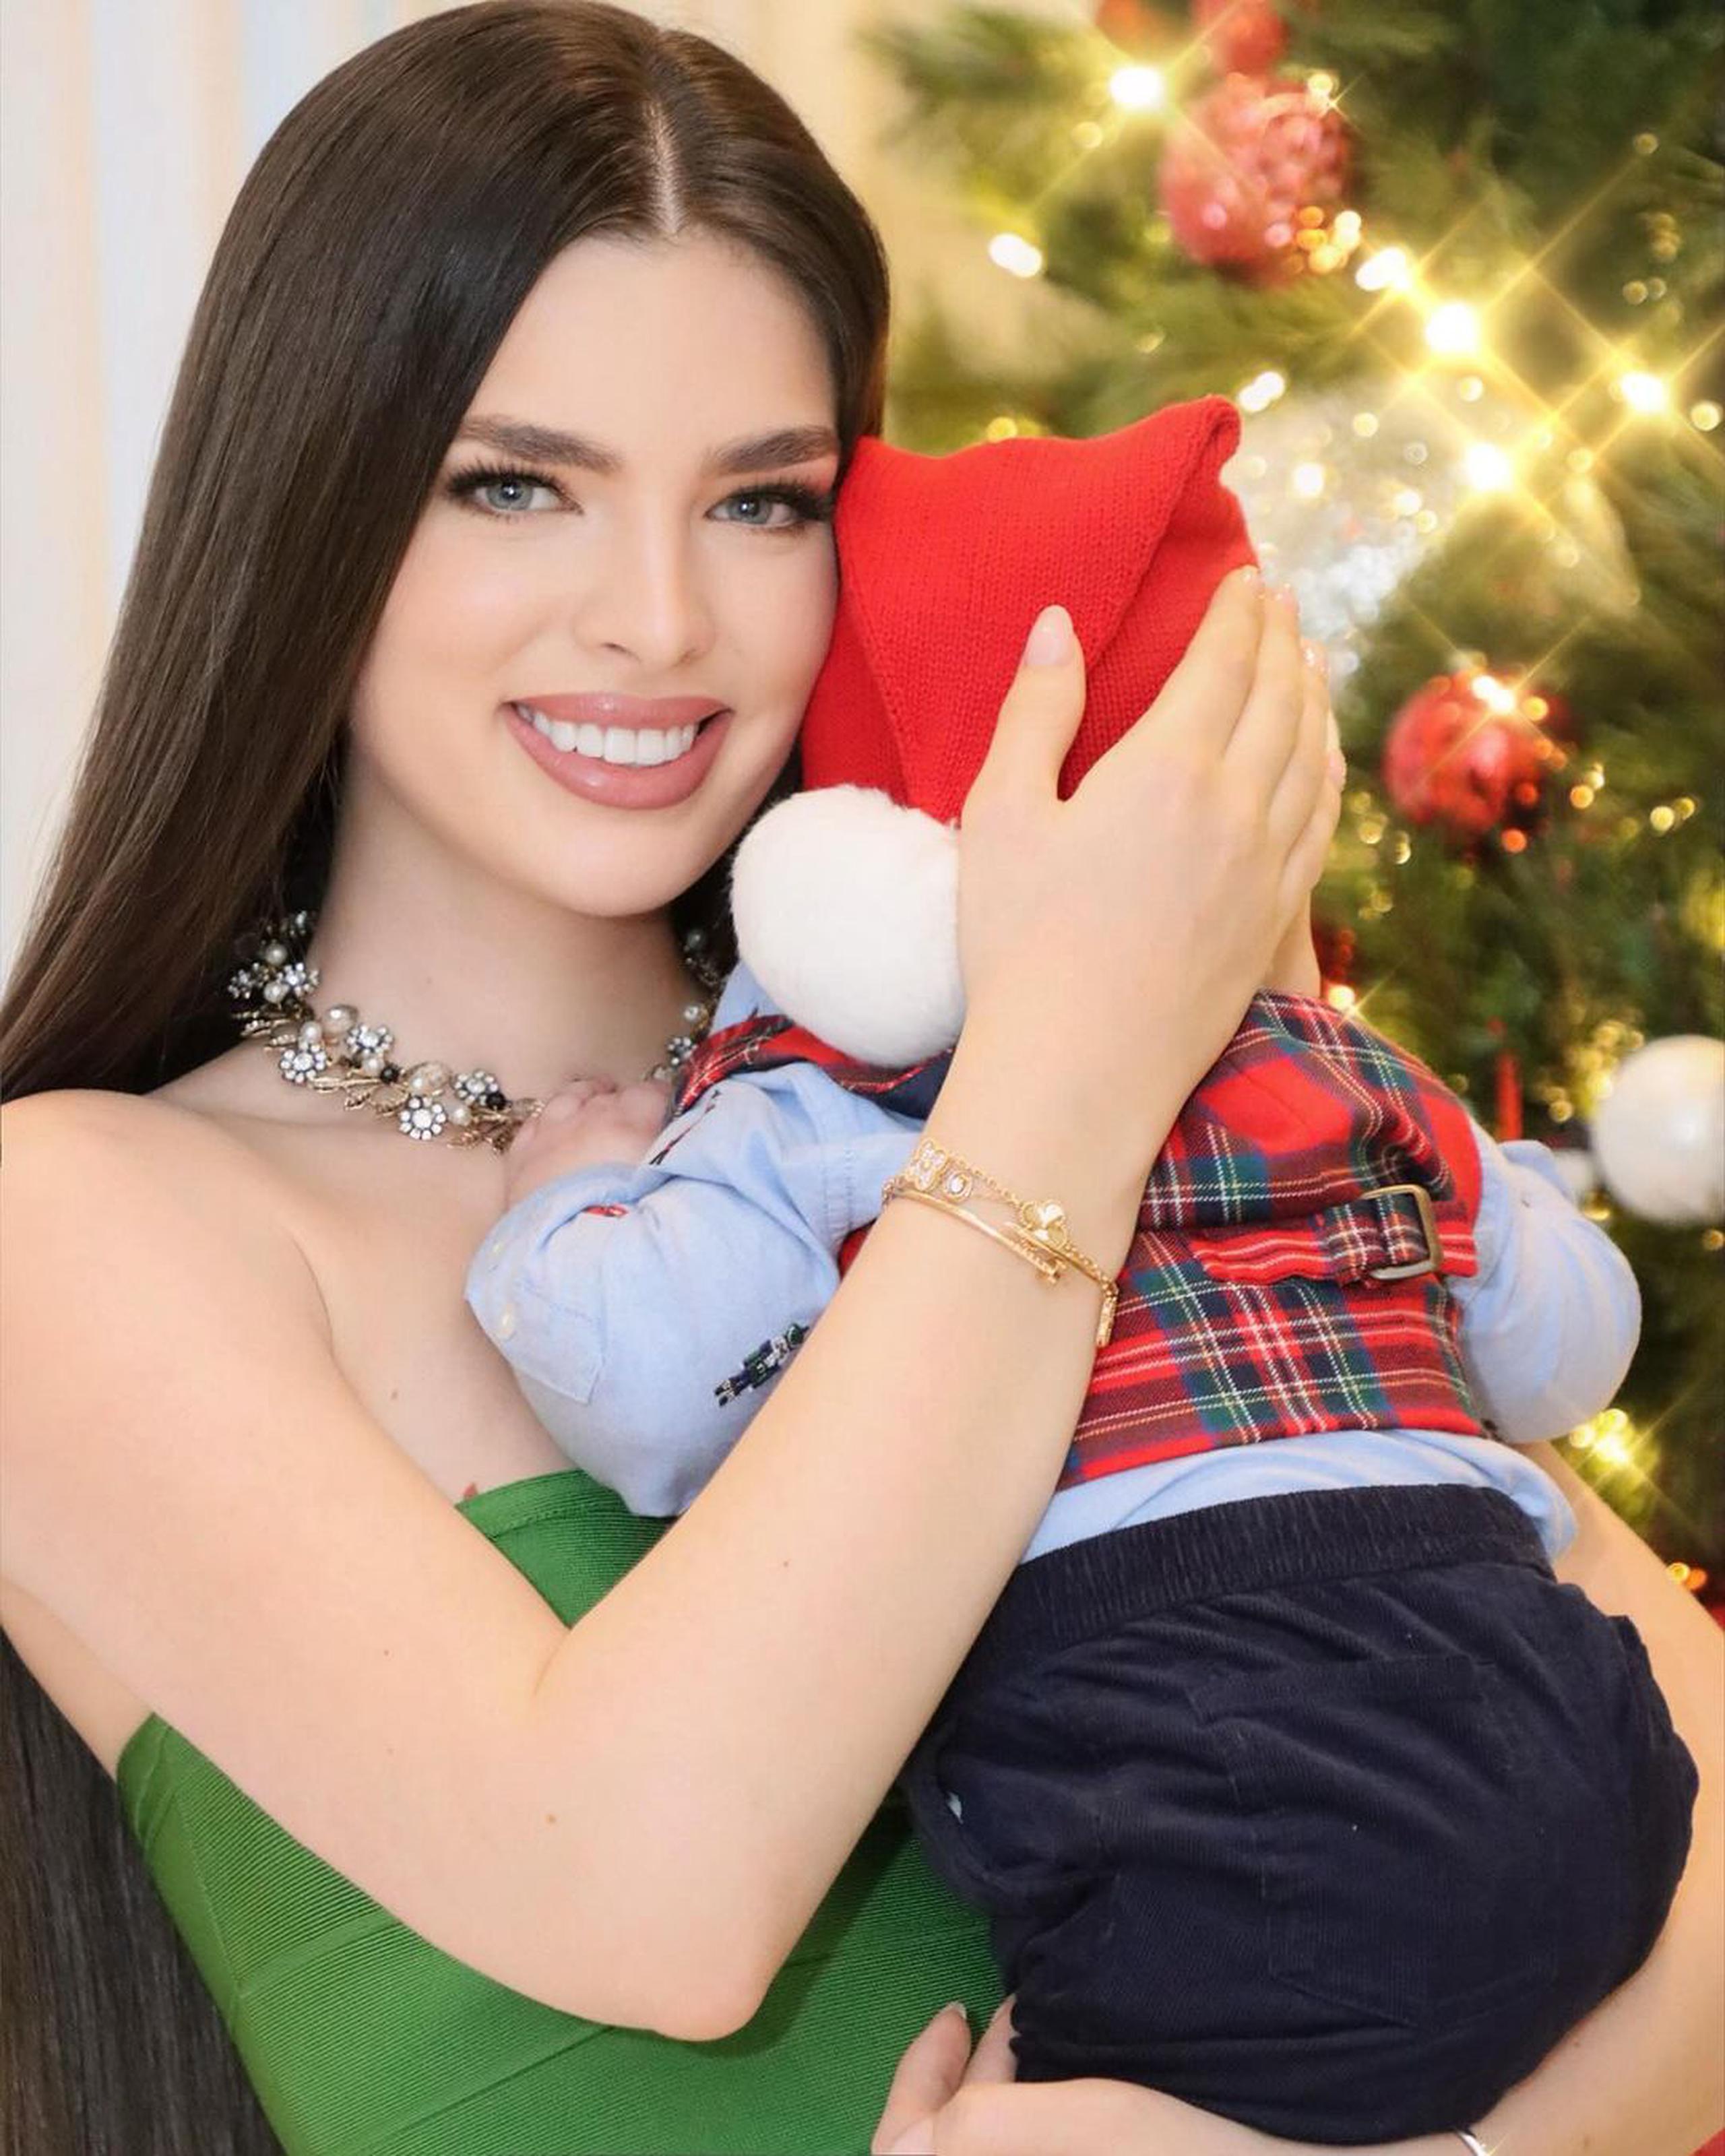 Nadia Ferreira está lucía al retratarse junto a su pequeño hijo en el Día de Navidad.